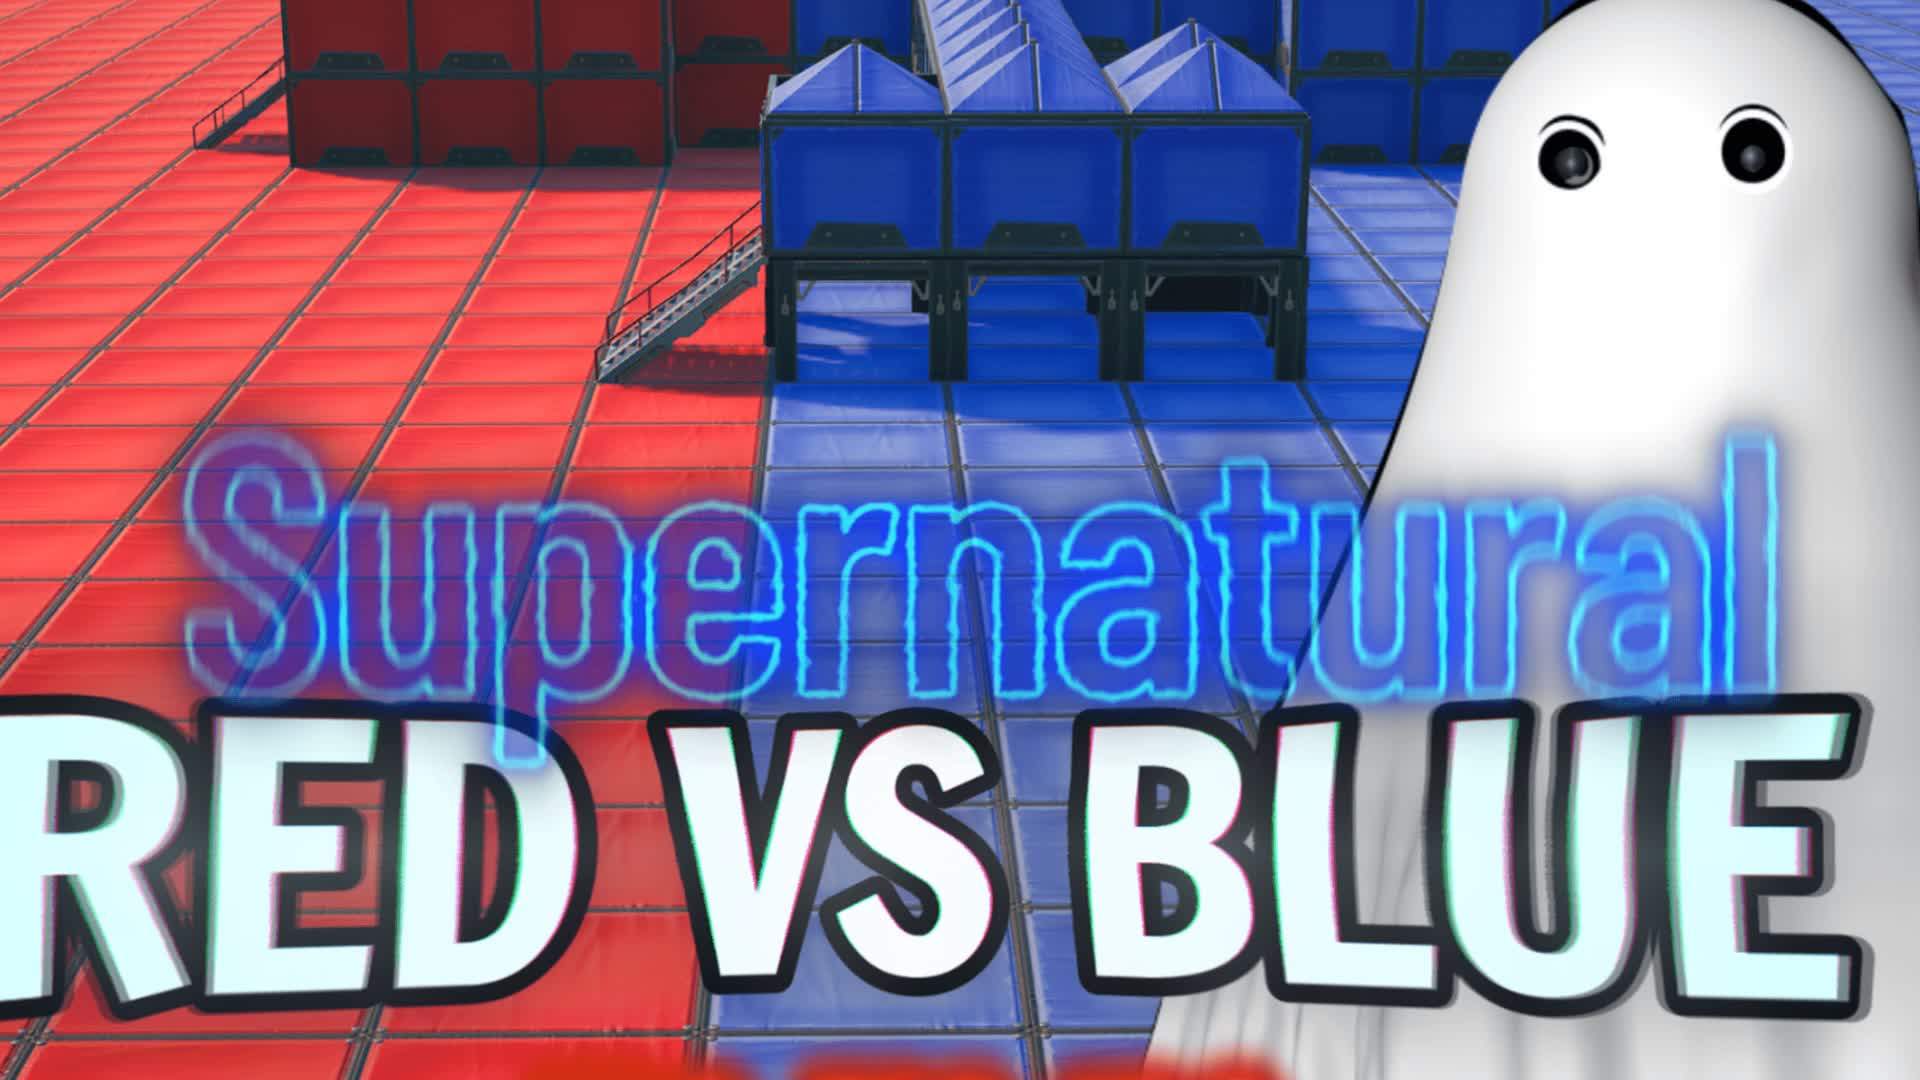 Supernatural Red vs Blue